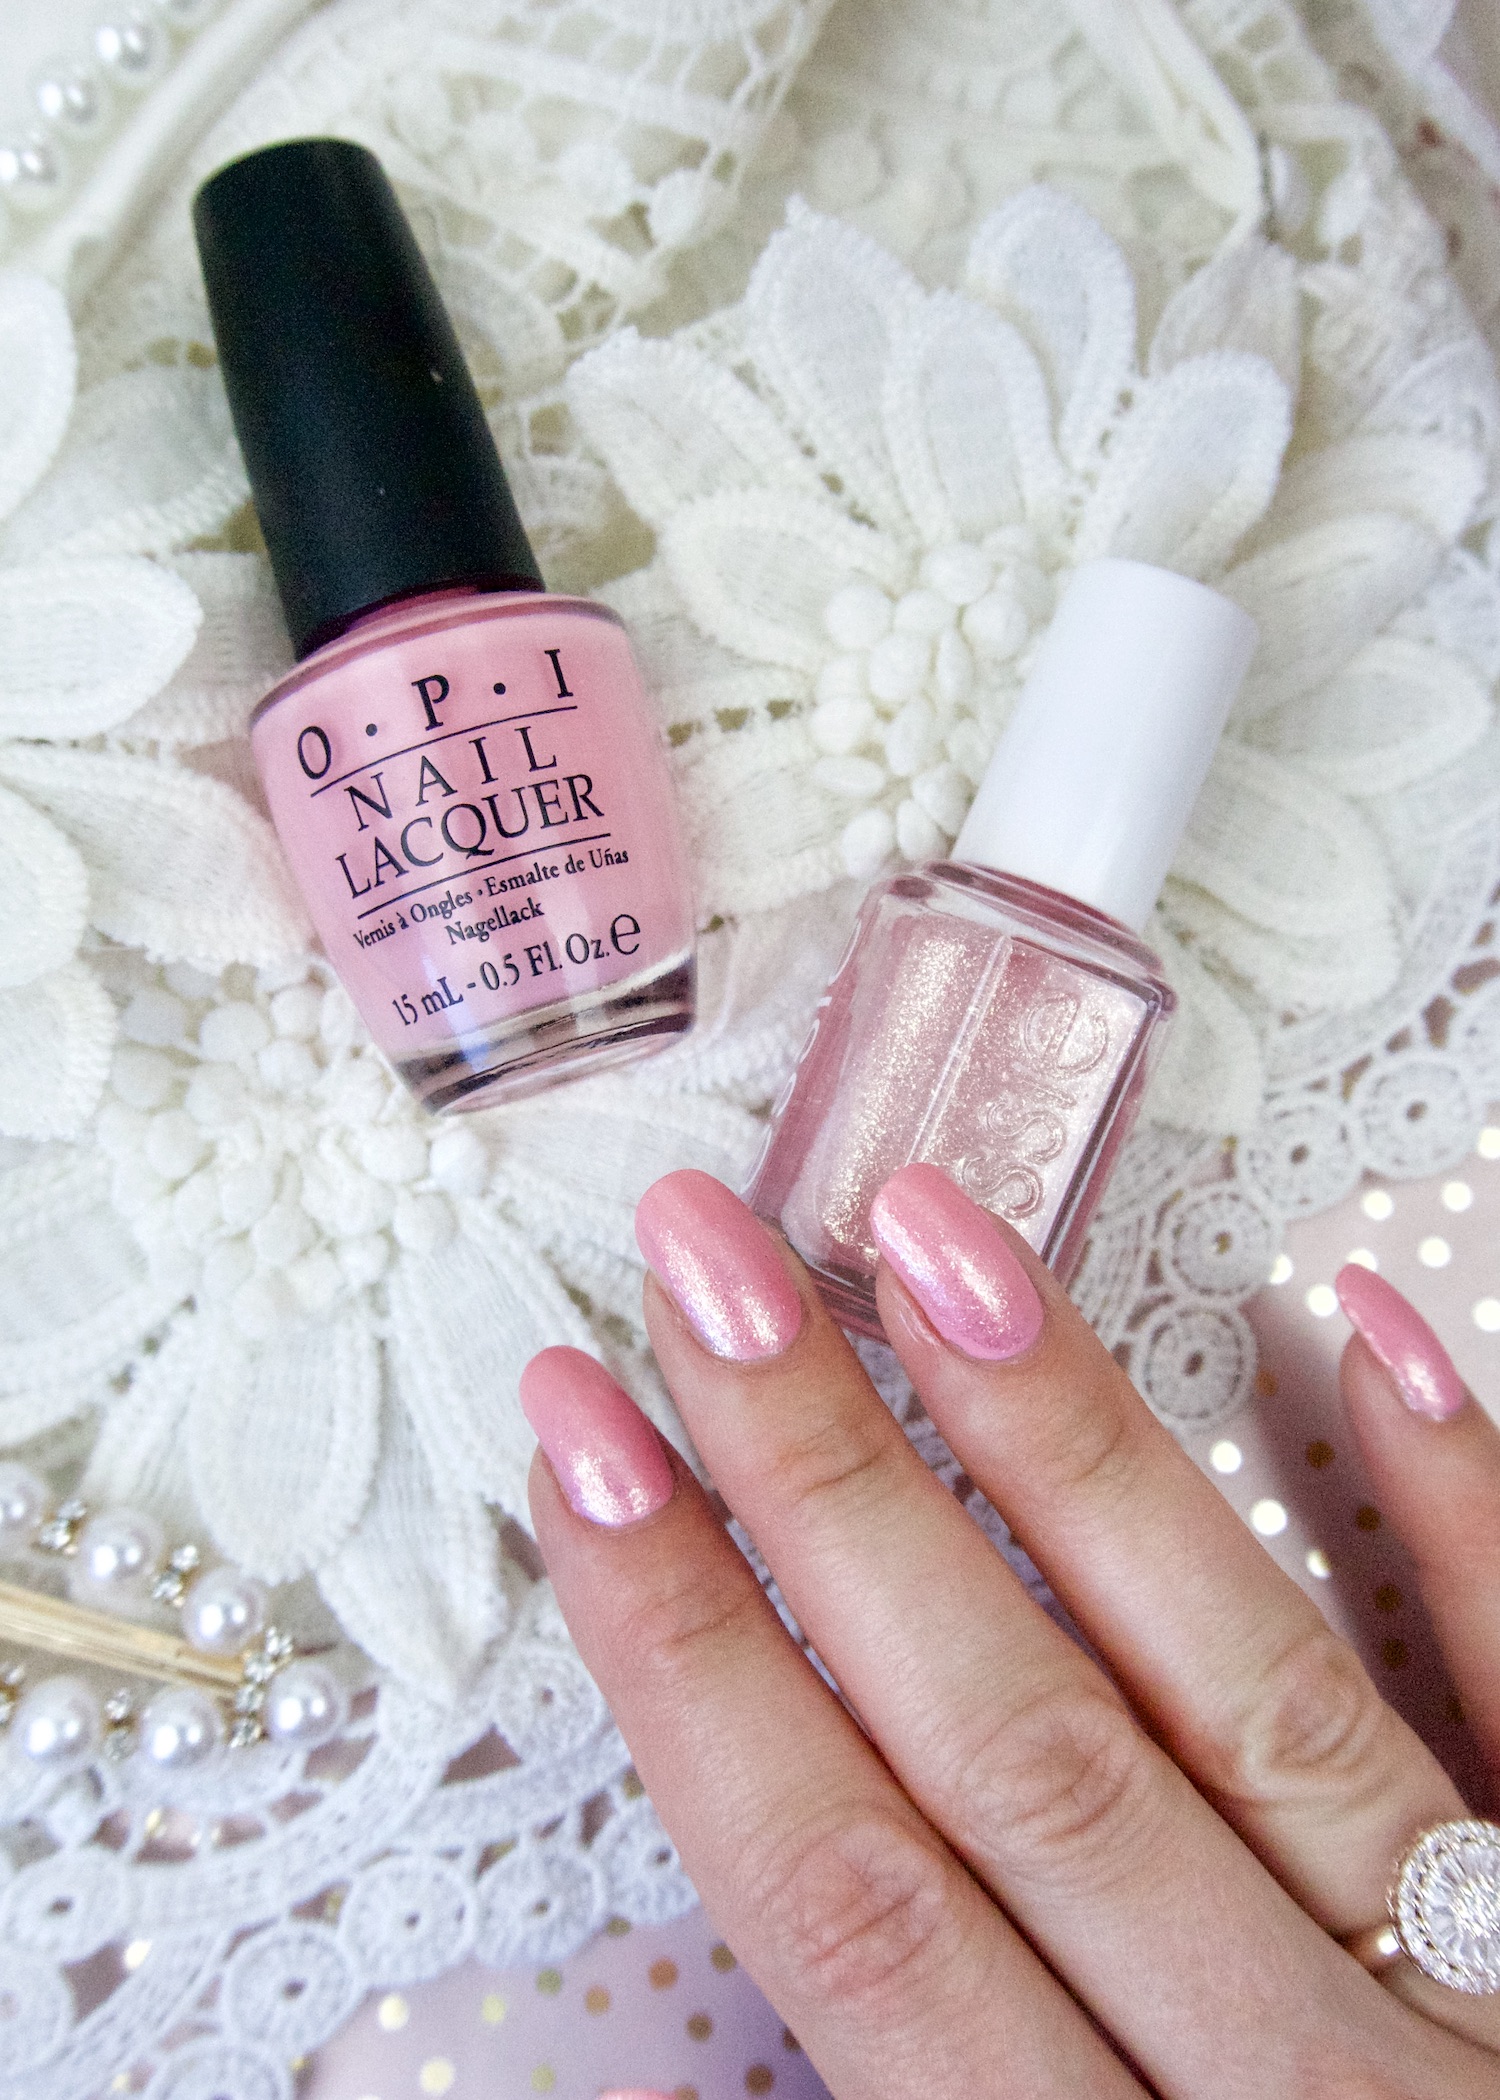 perfecte roze nagellak duo manicure OPI en Essie